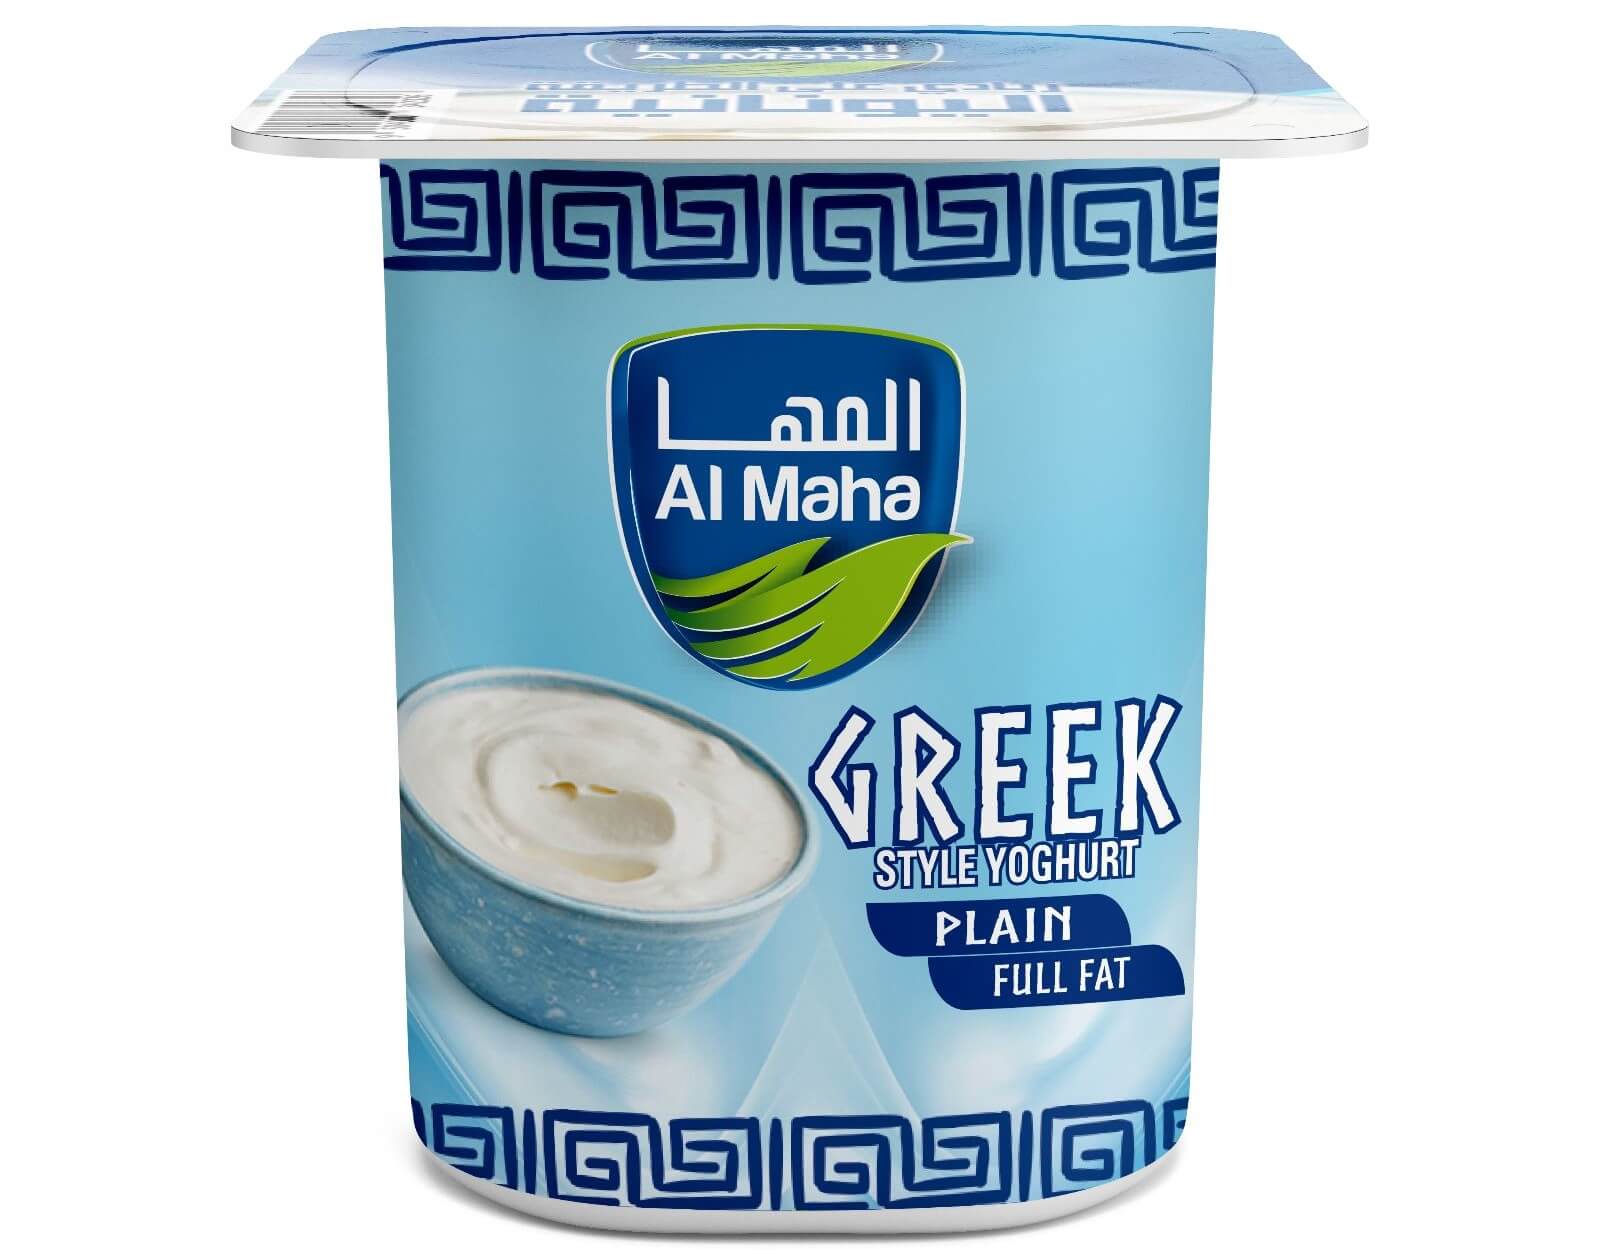 Full fat Greek yogurt